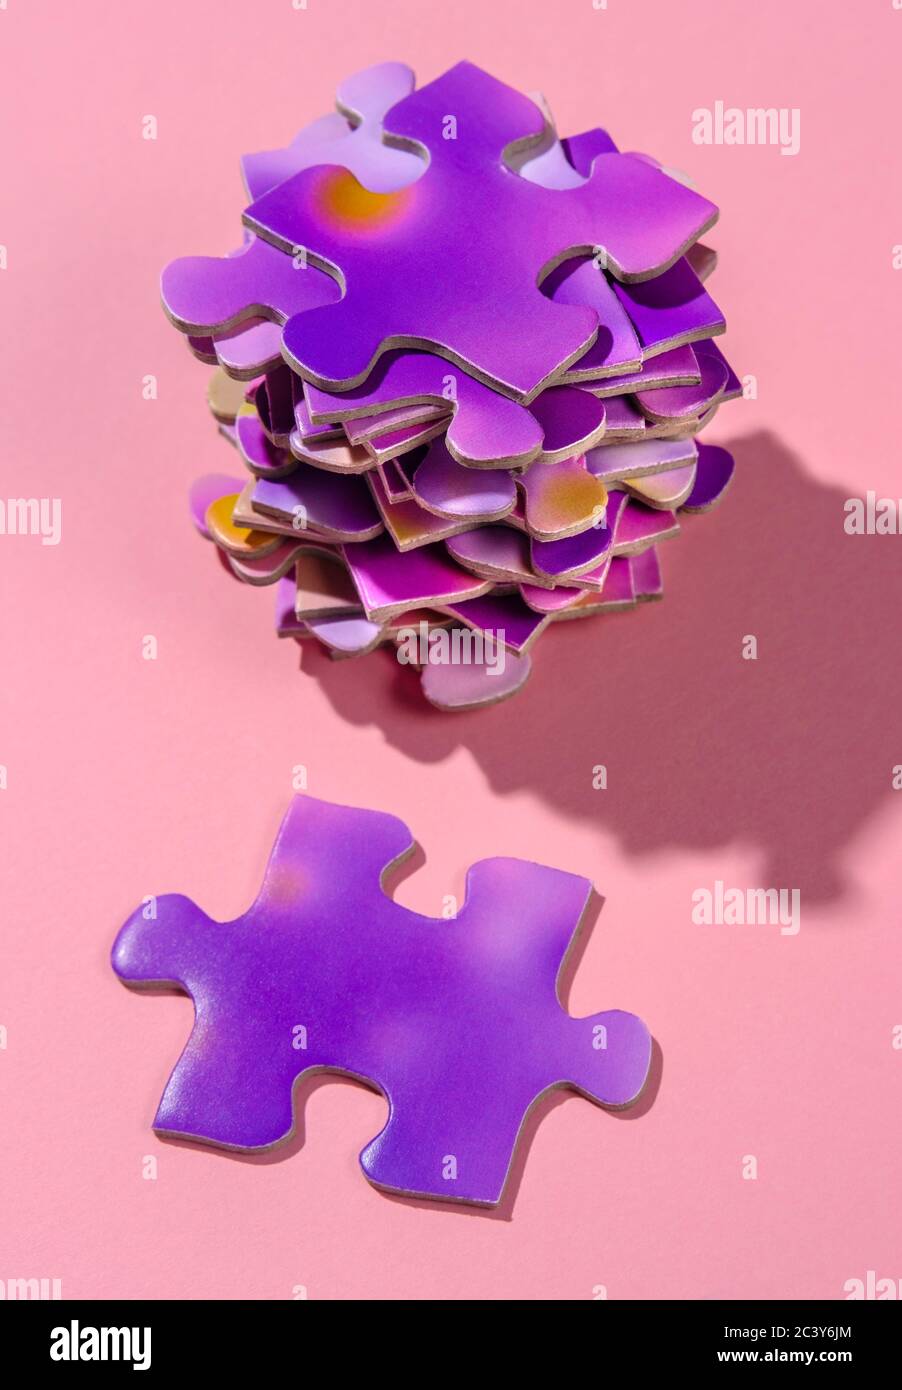 Pile de puzzles violettes Banque D'Images